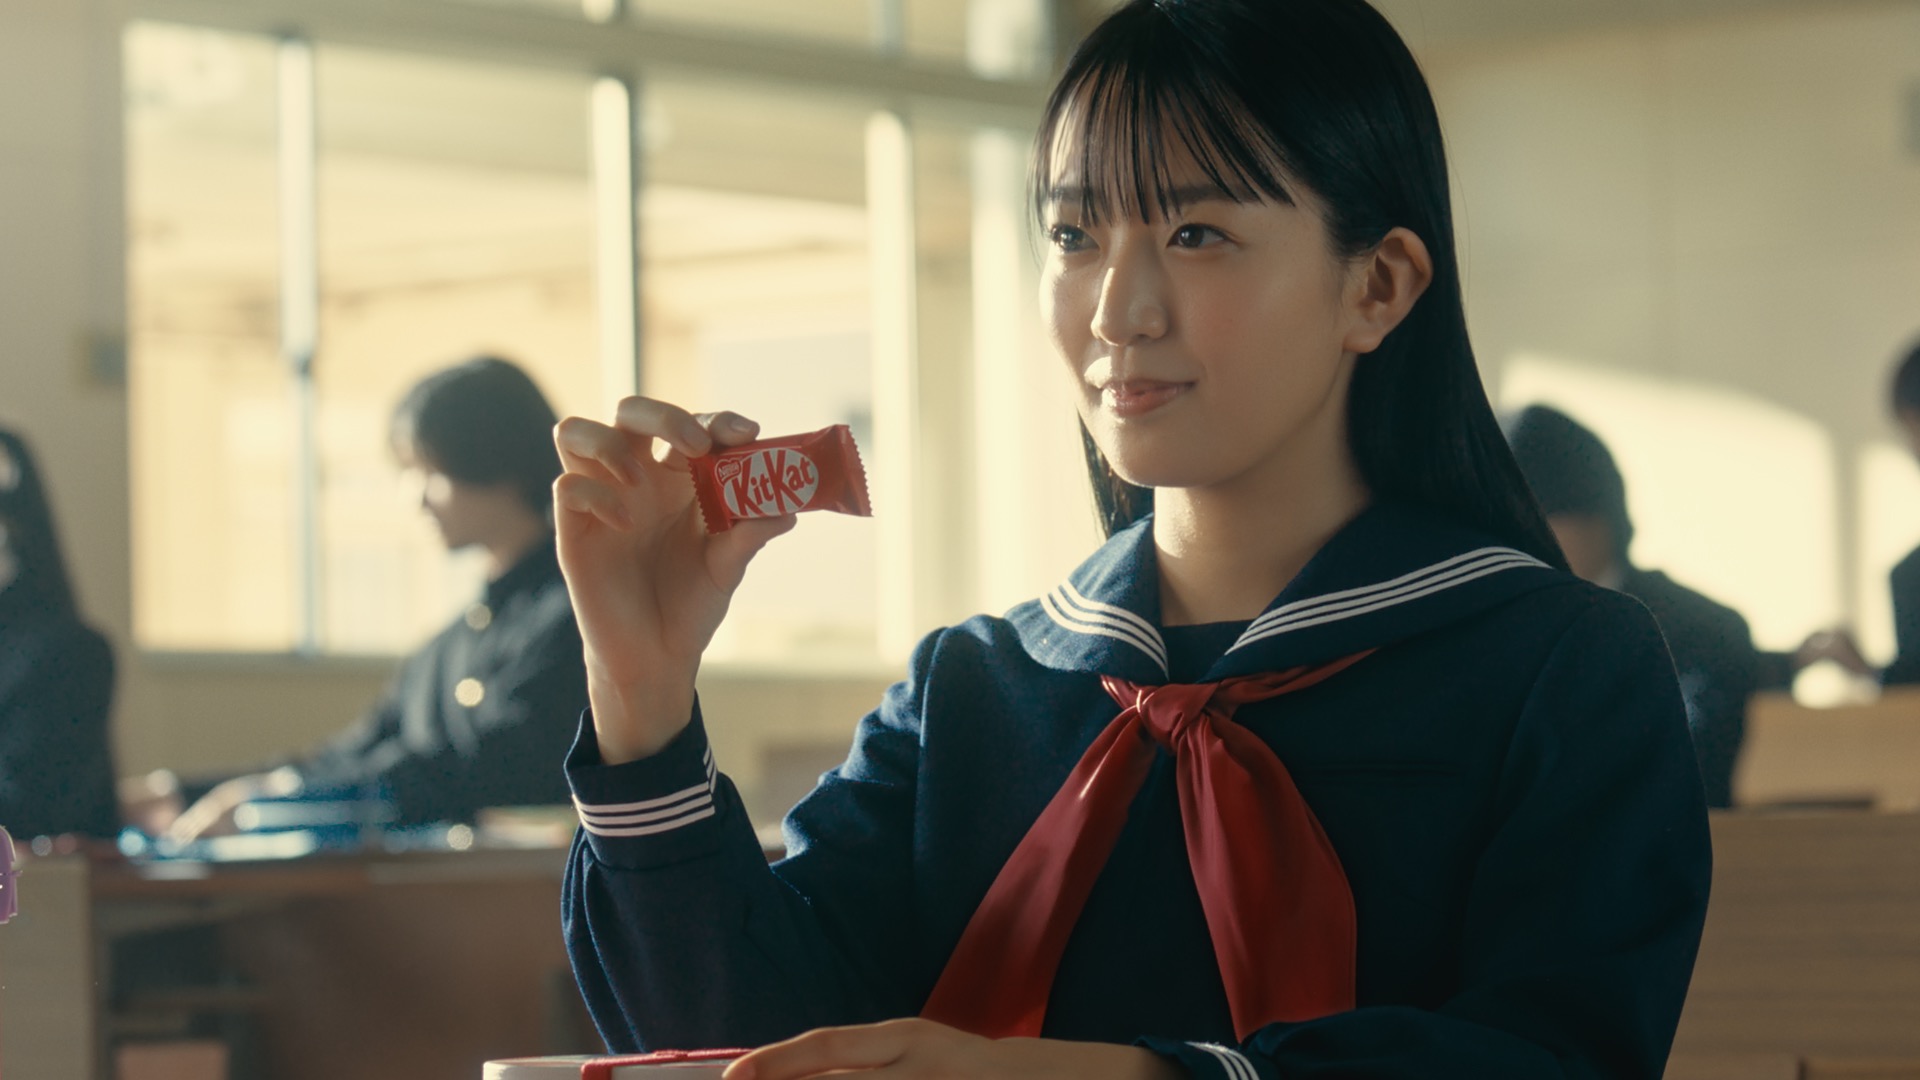 KitKat Nestlé Japan Ltd.